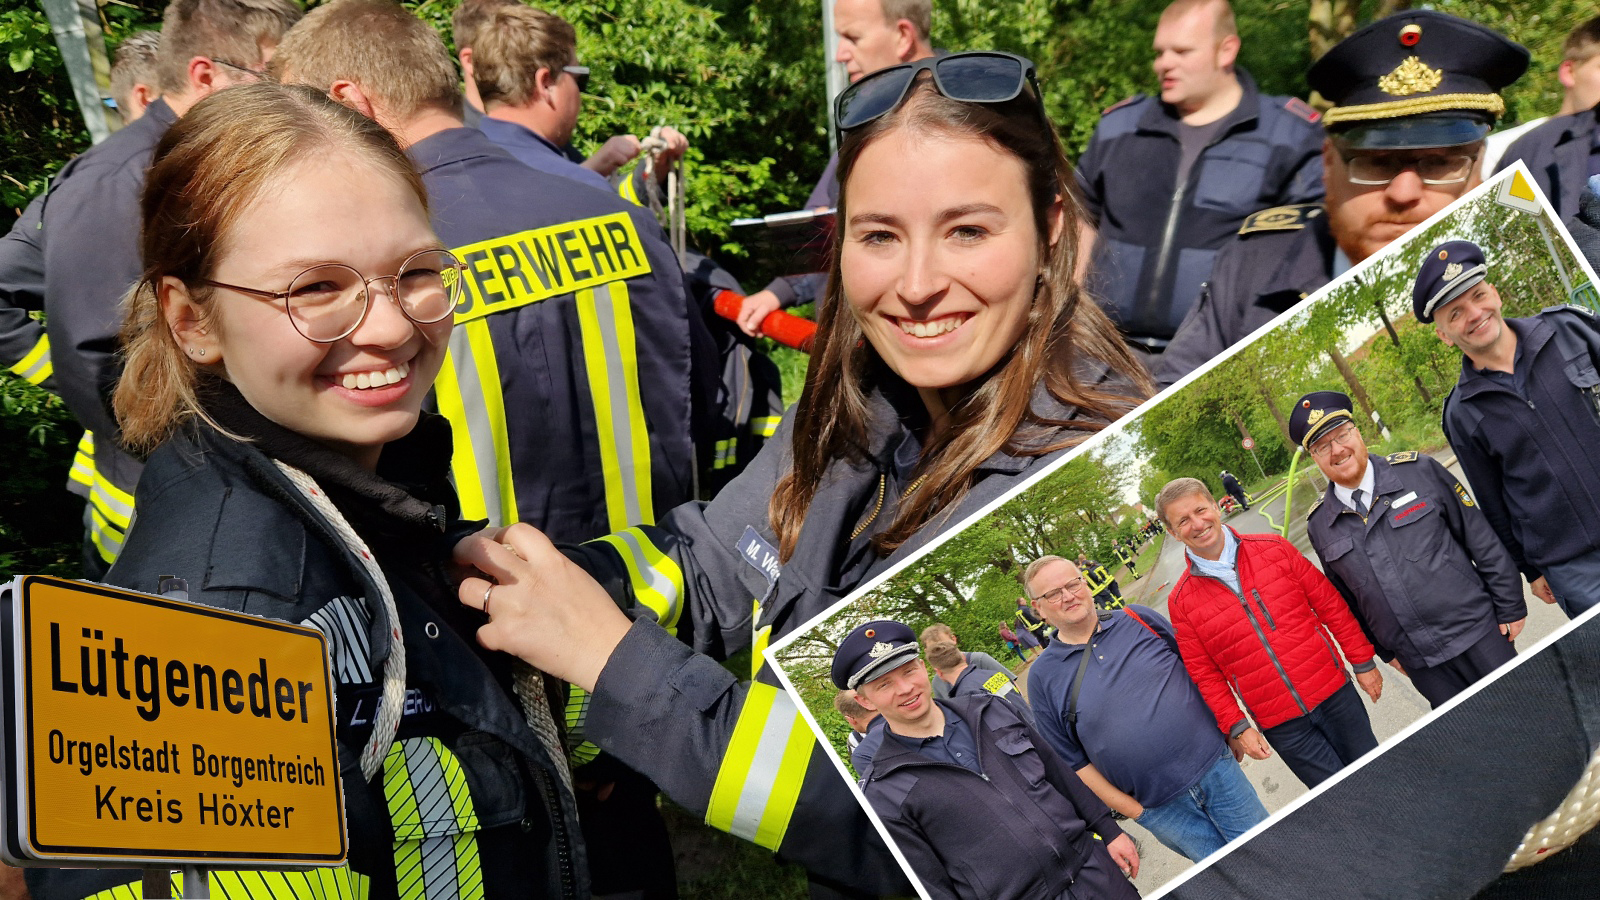 Feuerwehr-Wettkämpfe in Lütgeneder am „Internationalen Tag der Feuerwehrleute“: Landrat Stickeln und ein Ehrengast aus Holland sind mit von der Partie